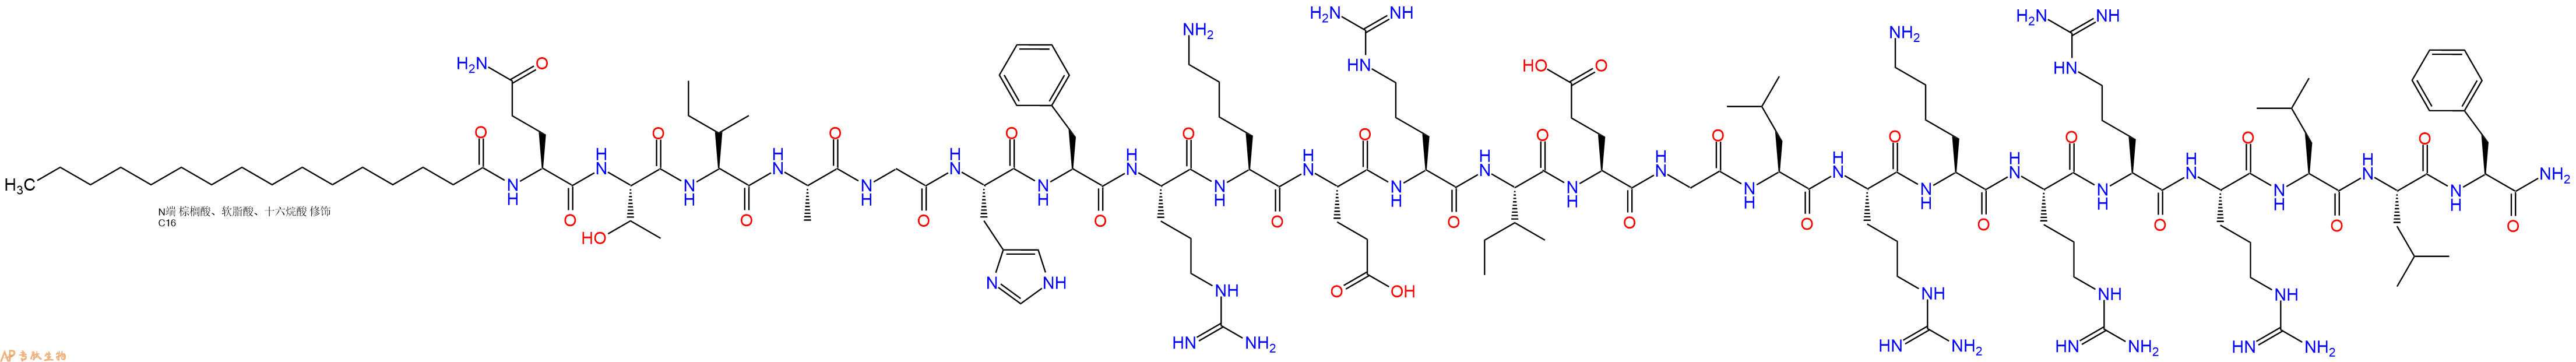 专肽生物产品PAL-Gln-Thr-Ile-Ala-Gly-His-Phe-Arg-Lys-Glu-Arg-Il